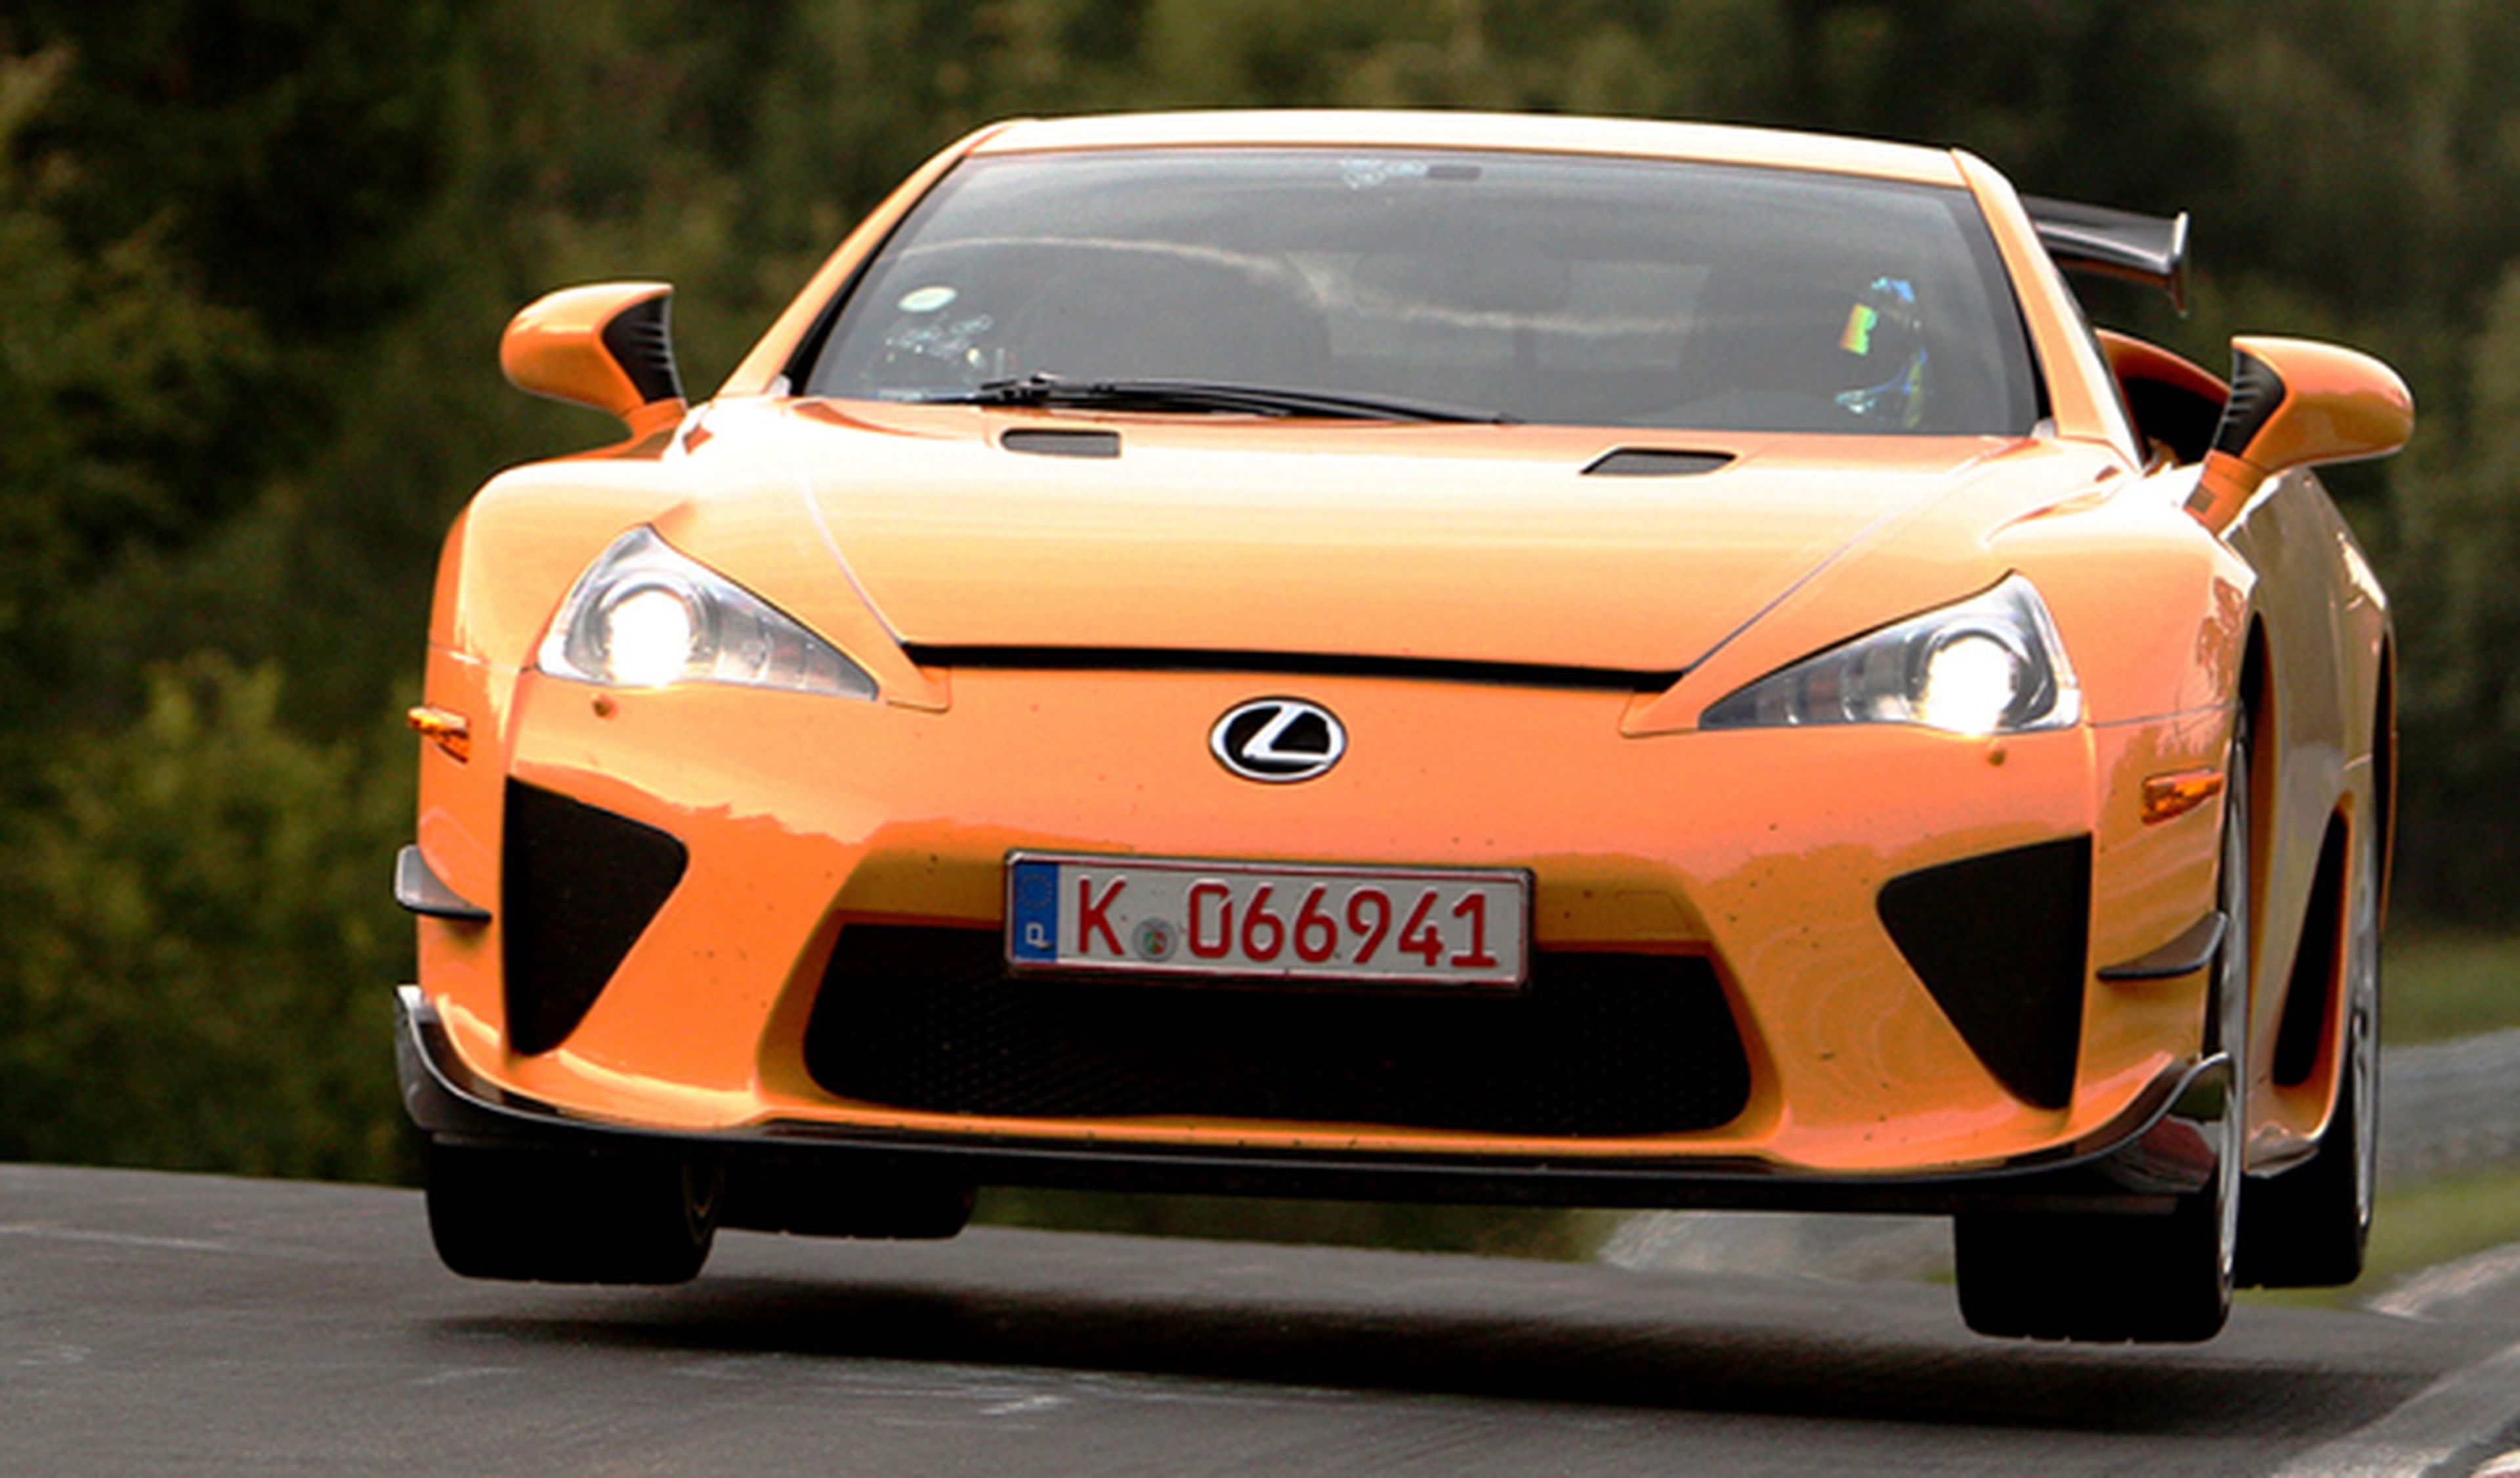 ¿Pagarías 6,4 millones de euros por este Lexus?